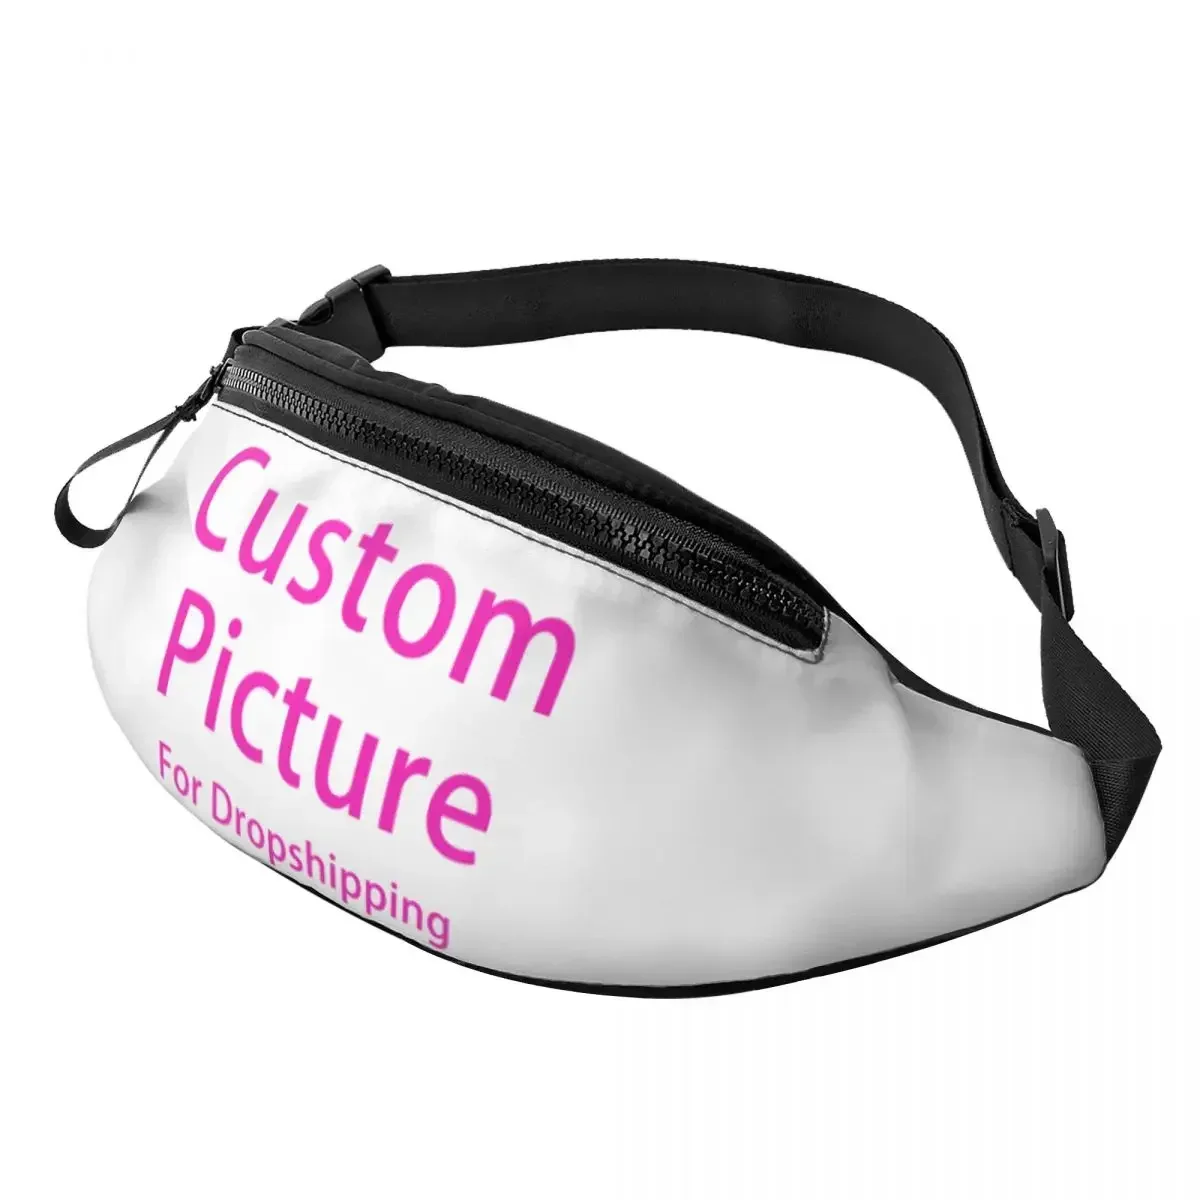 

Забавная поясная сумка для женщин, персонализированная Сумочка через плечо с индивидуальным фото и логотипом, для бега, телефона, денег